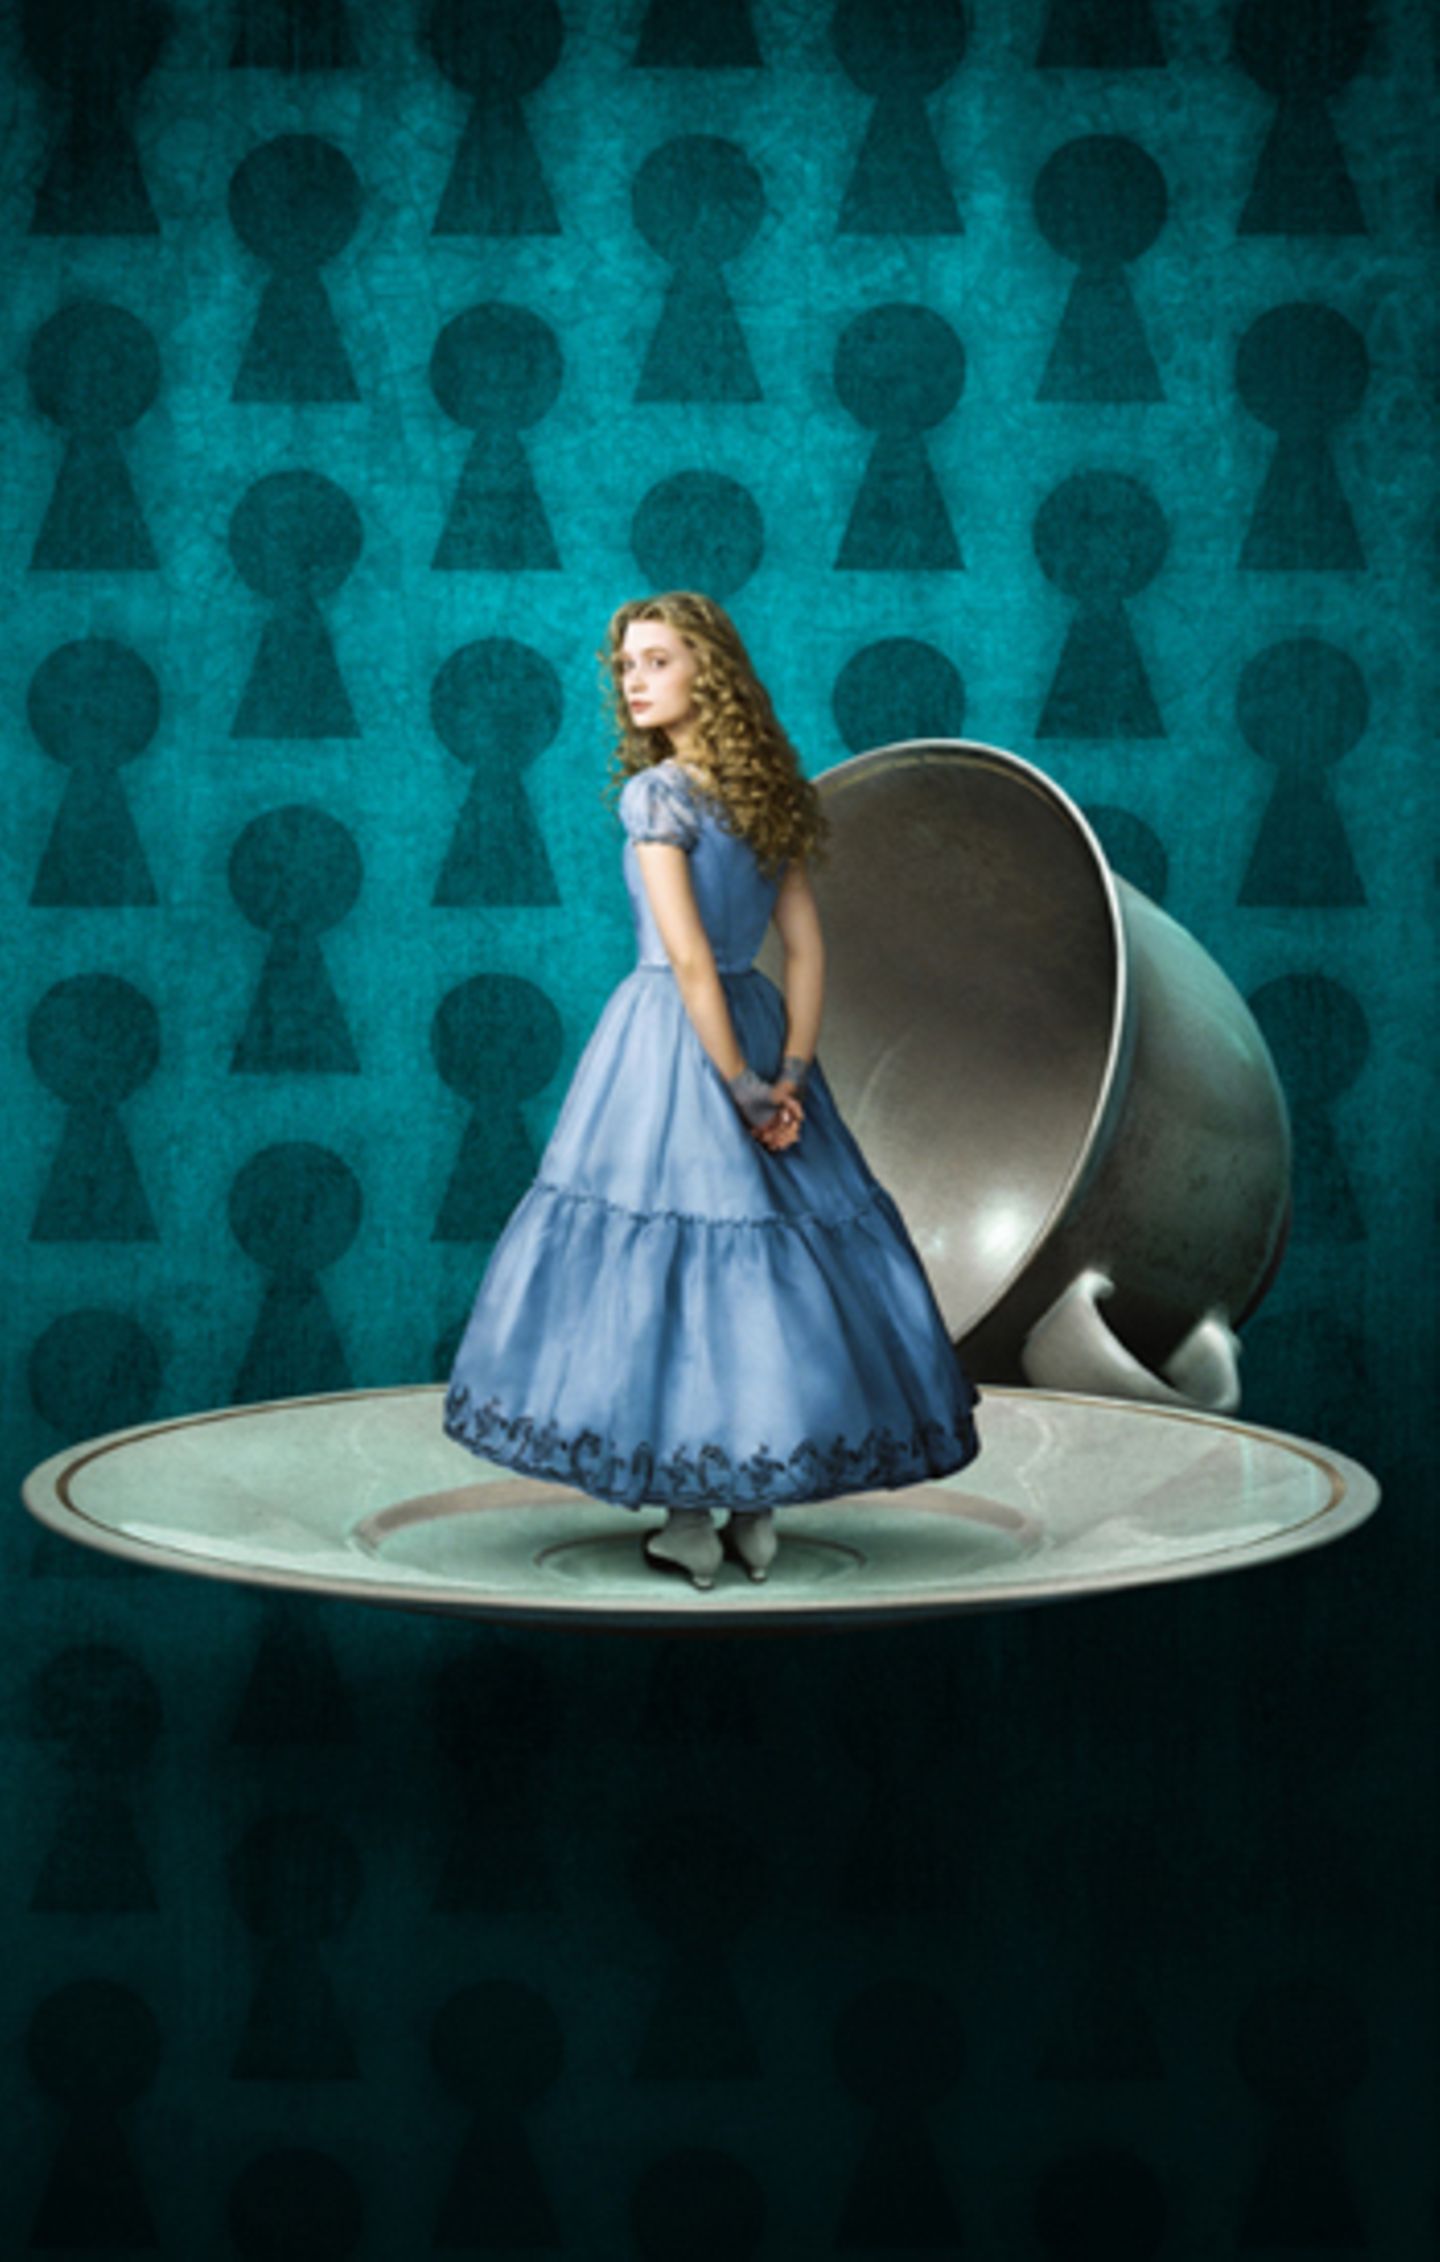 Alice im Wunderland: Alice erlebt allerlei skurile Dinge in der Fantasiewelt.